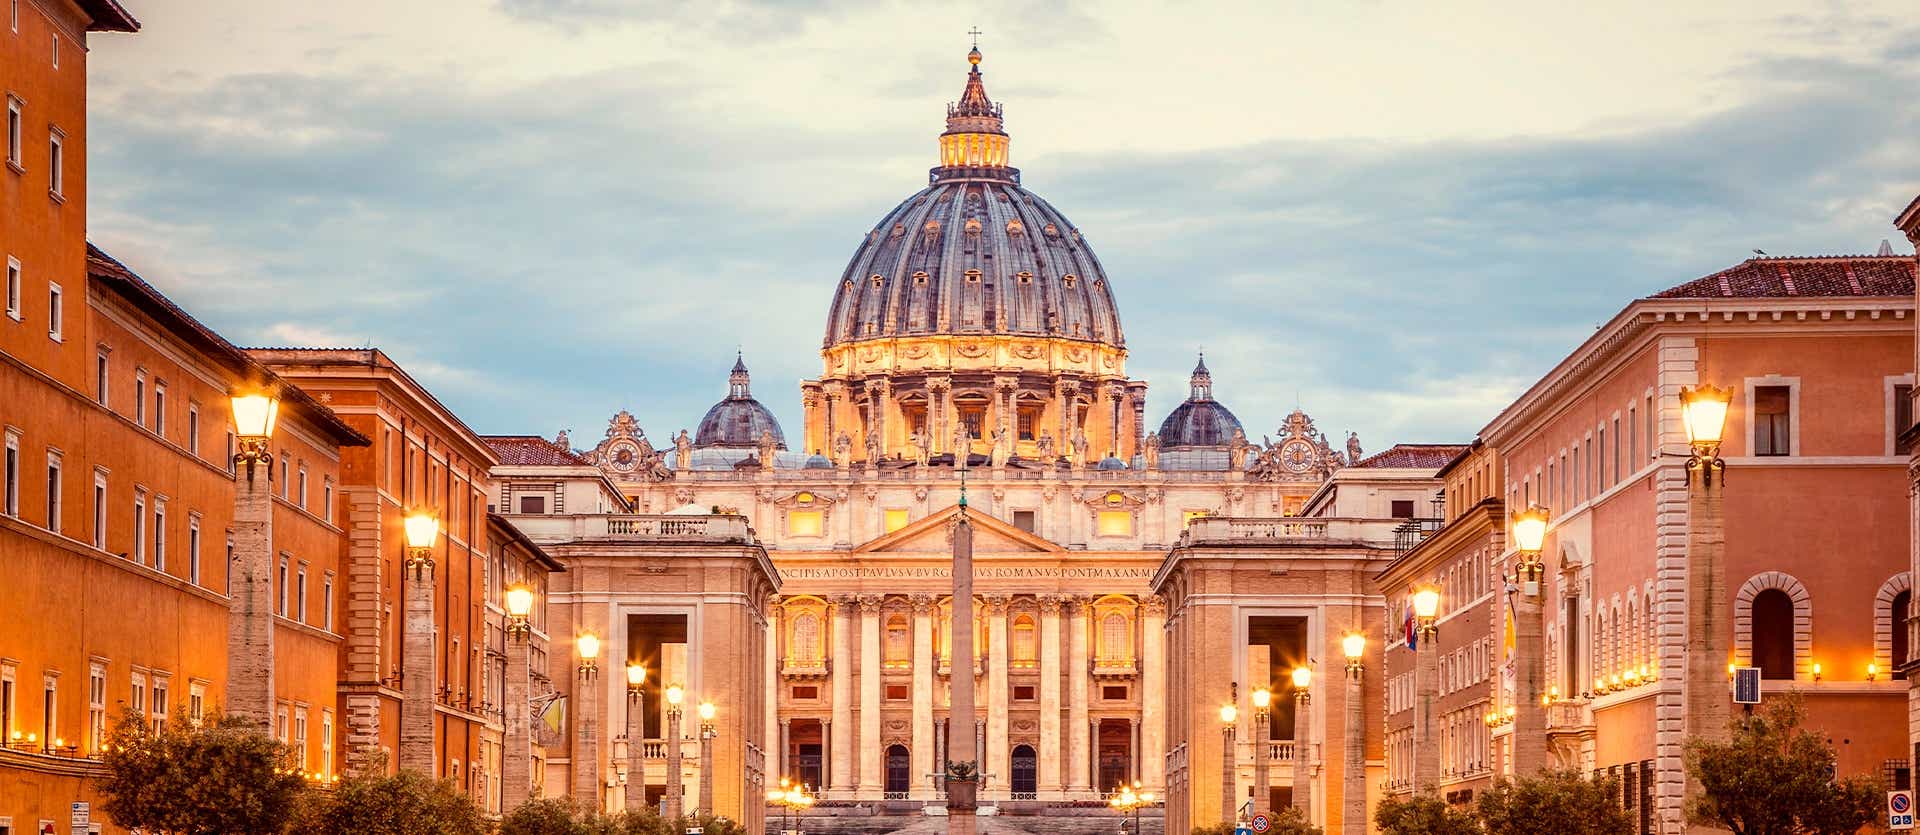 Vatican City <span class="iconos separador"></span> Rome